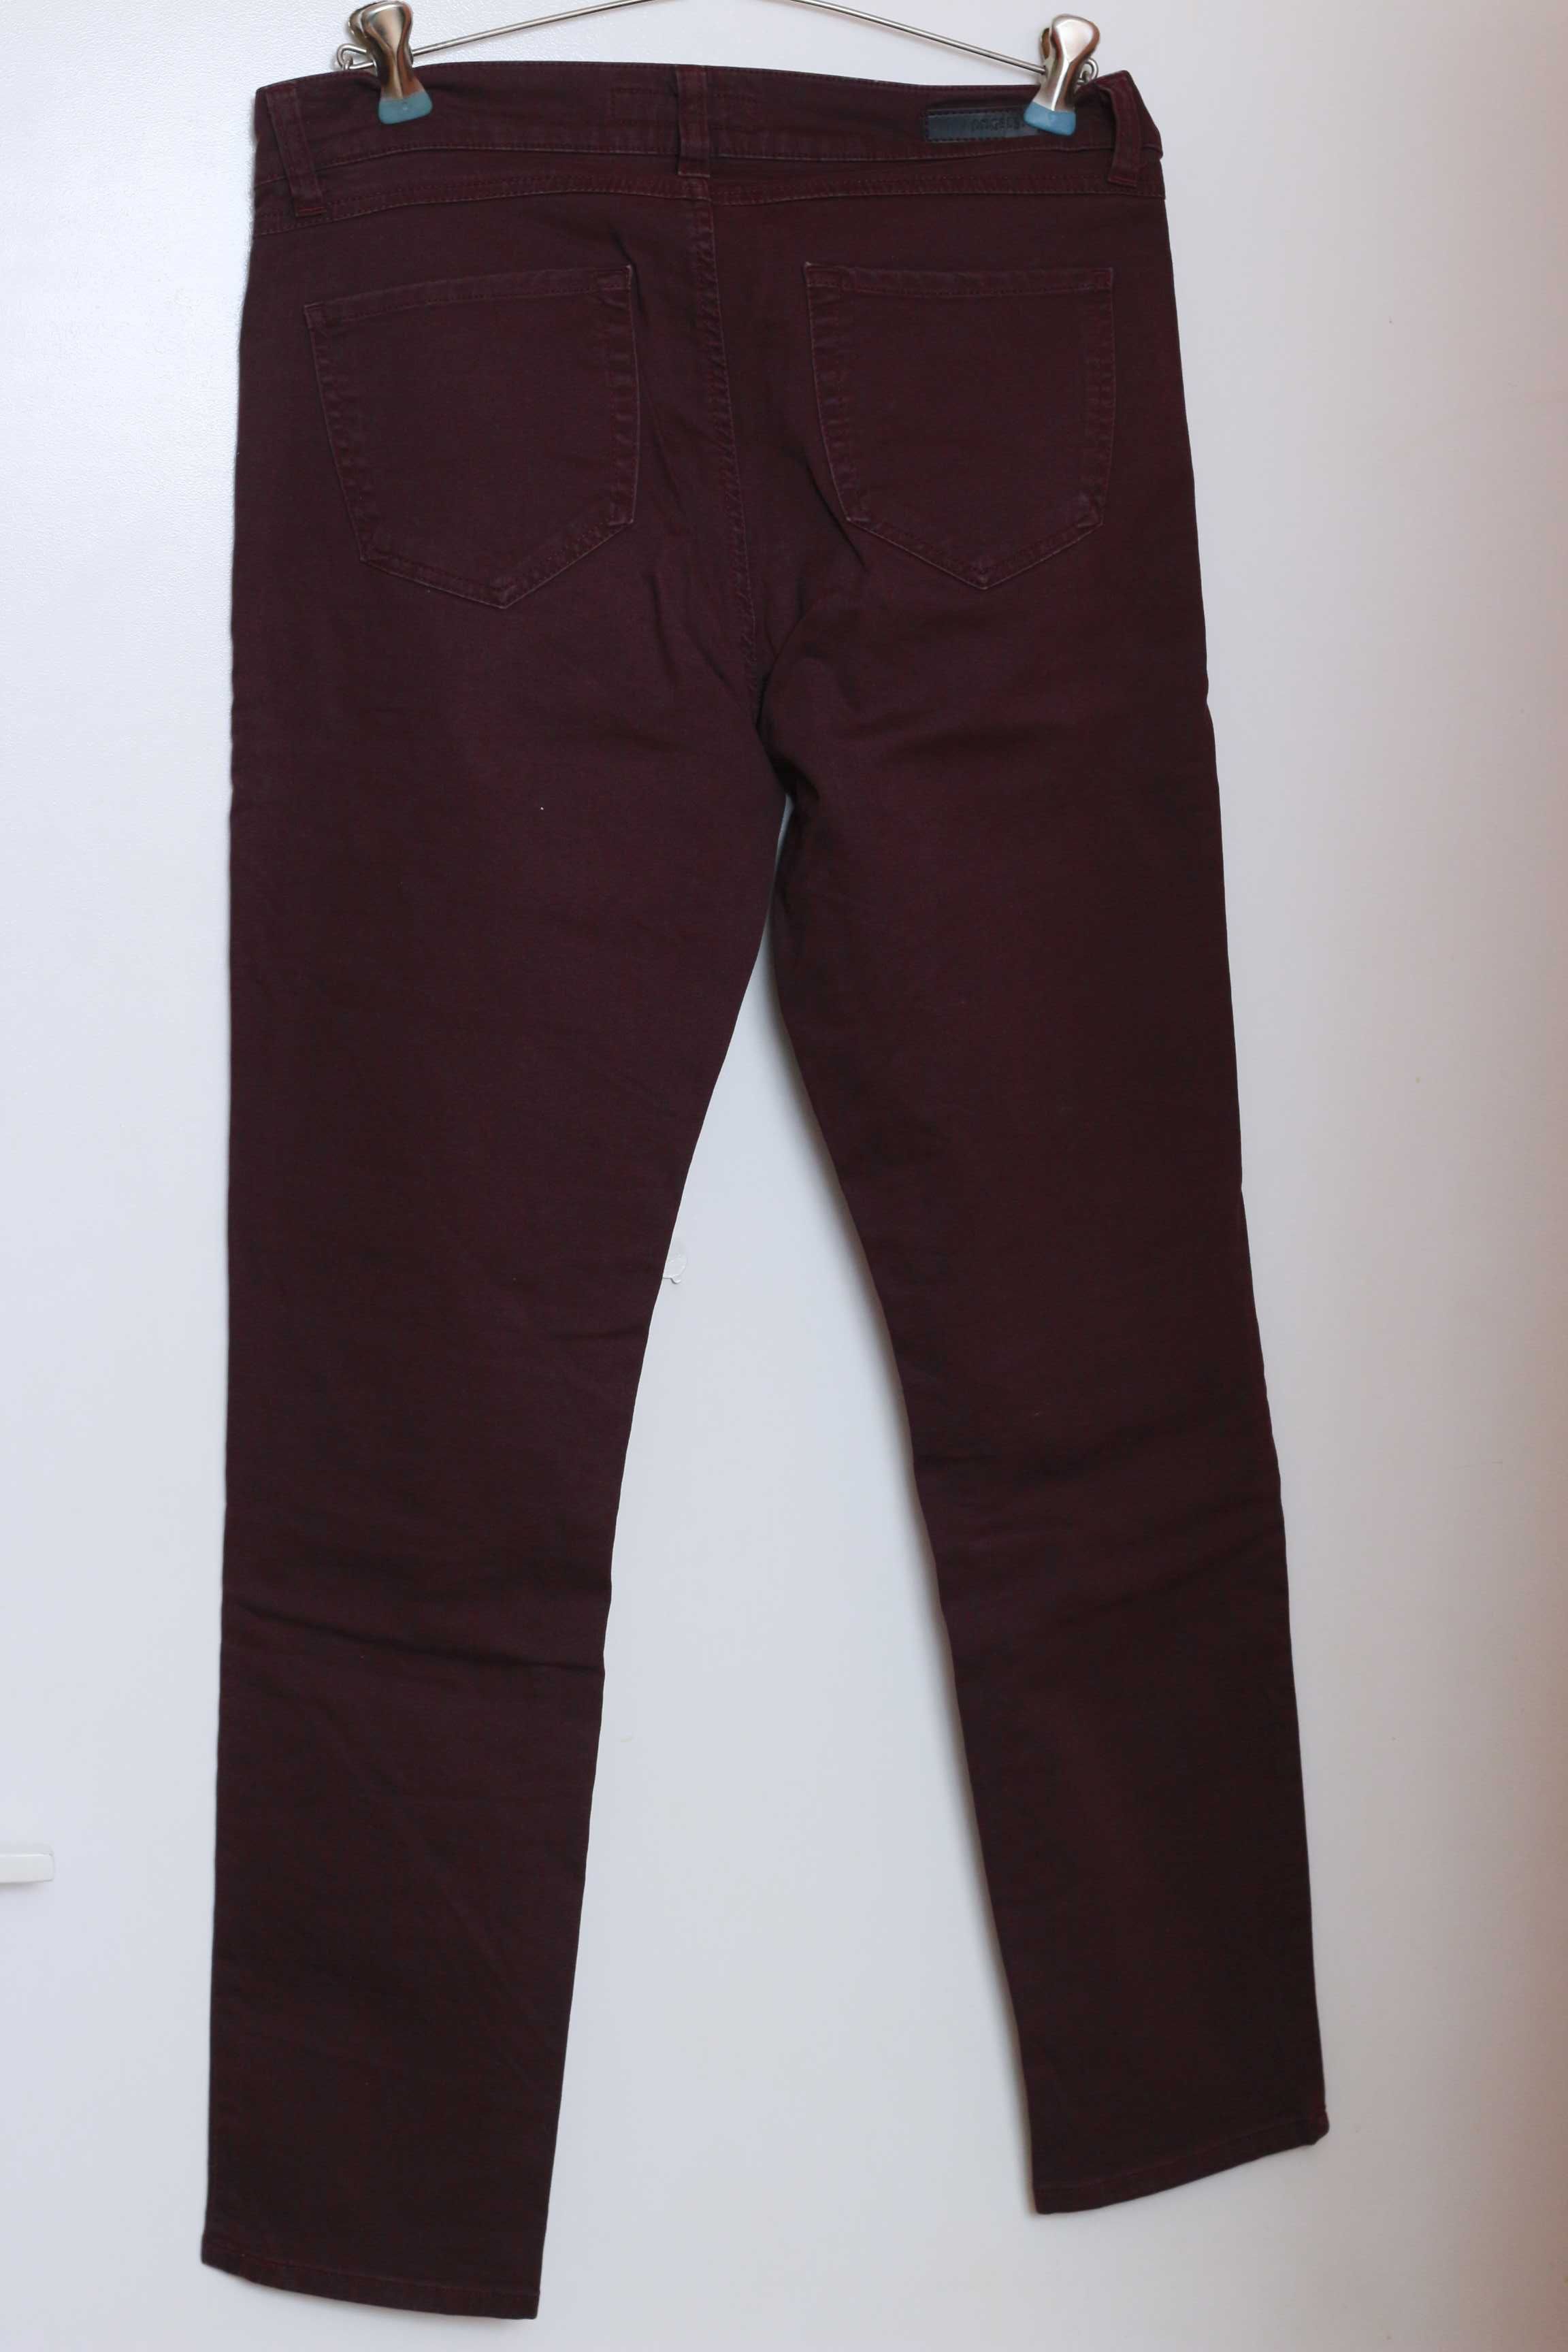 Spodnie wiśniowy/bordowy Angels S/M/L jeans denim